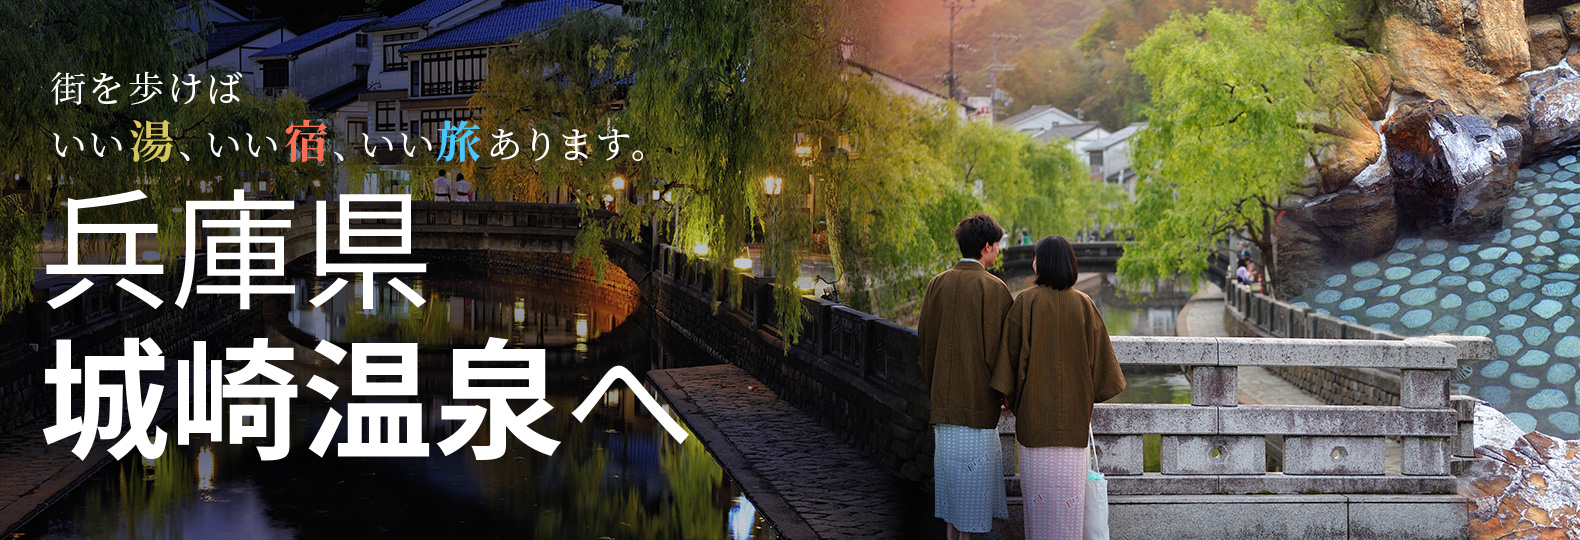 街を歩けばいい湯、いい宿、いい旅あります。兵庫県城崎温泉へ